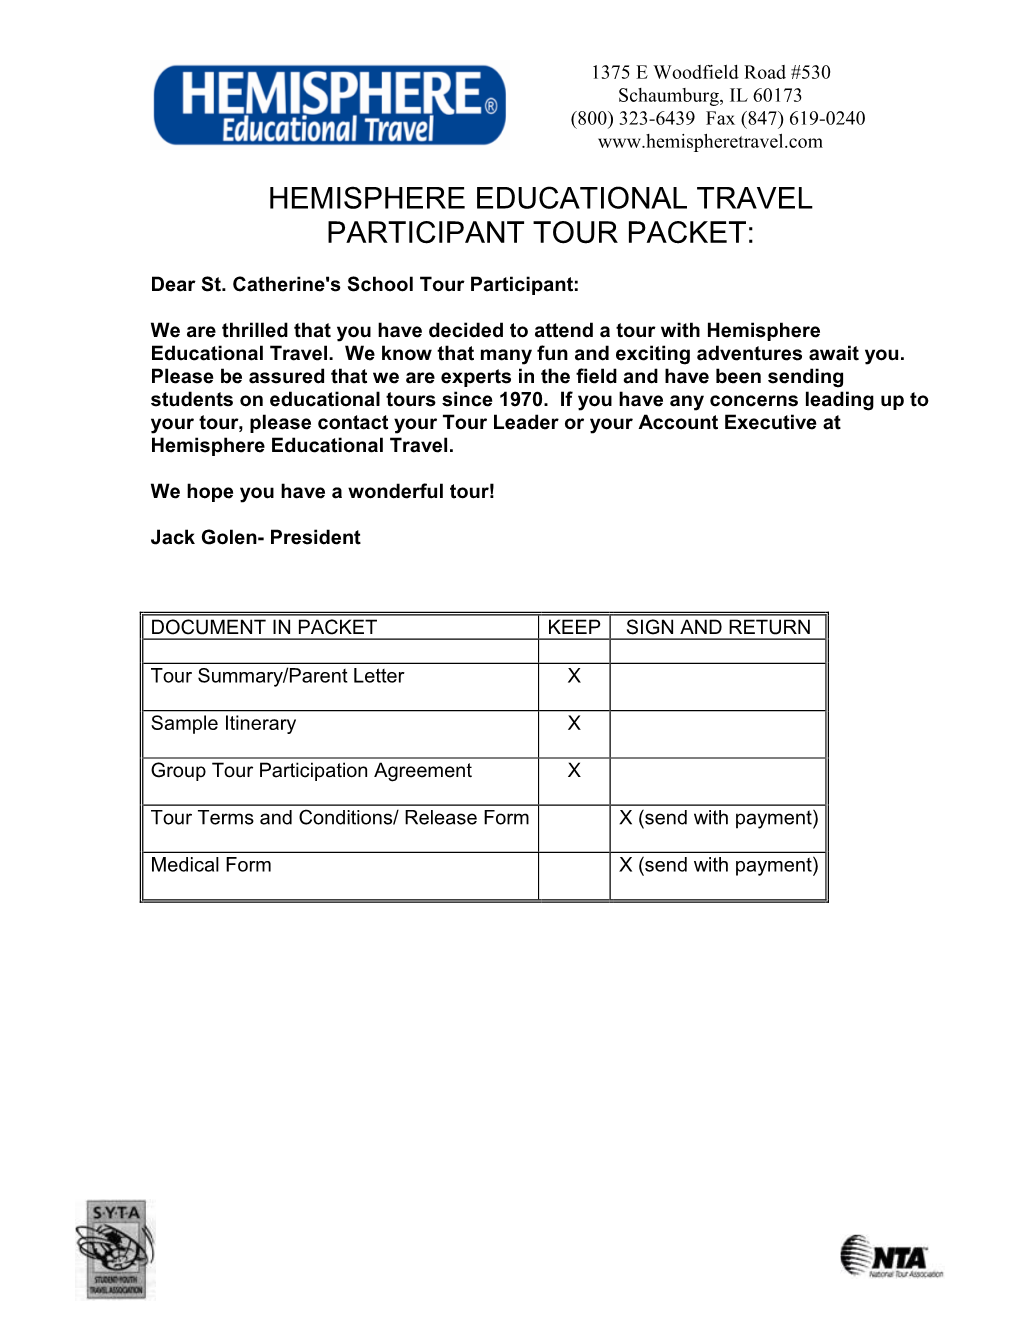 Hemisphere Educational Travel Participant Tour Packet